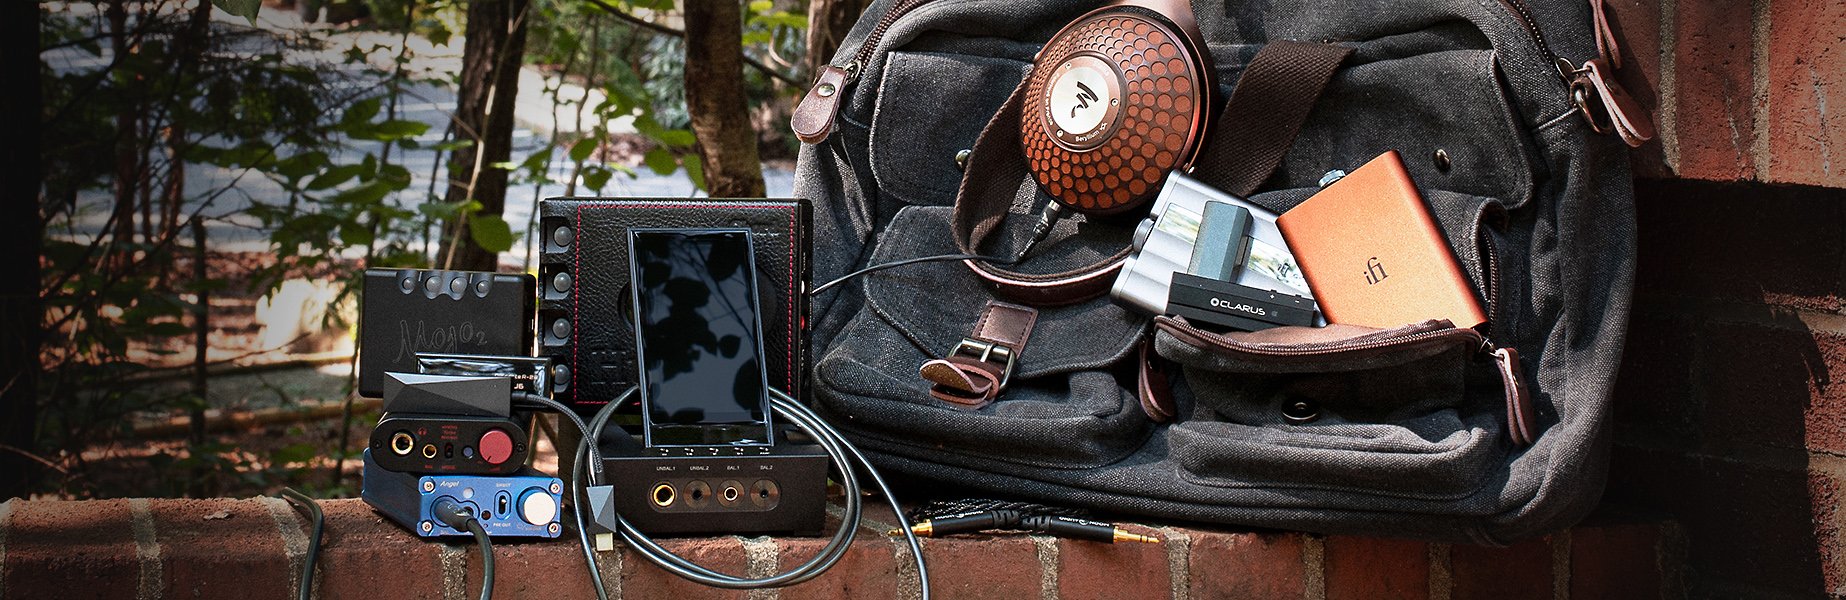 Portable DACs on a messenger bag outside